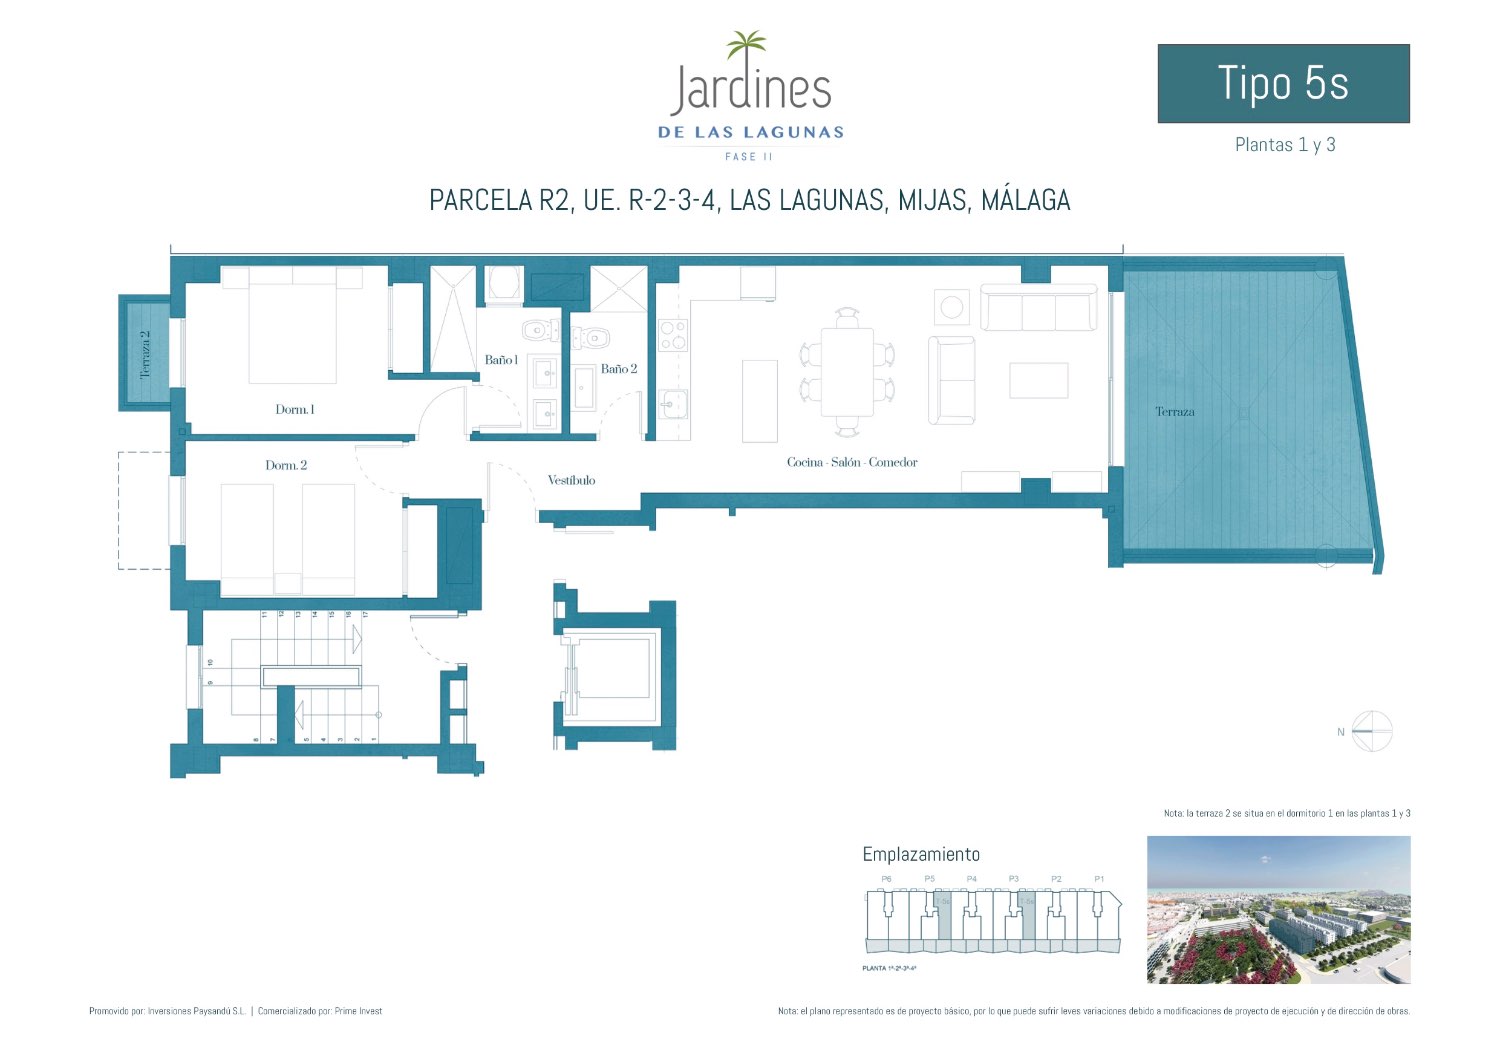 New promotional apartment in Las Lagunas de Mijas - Costa del Sol